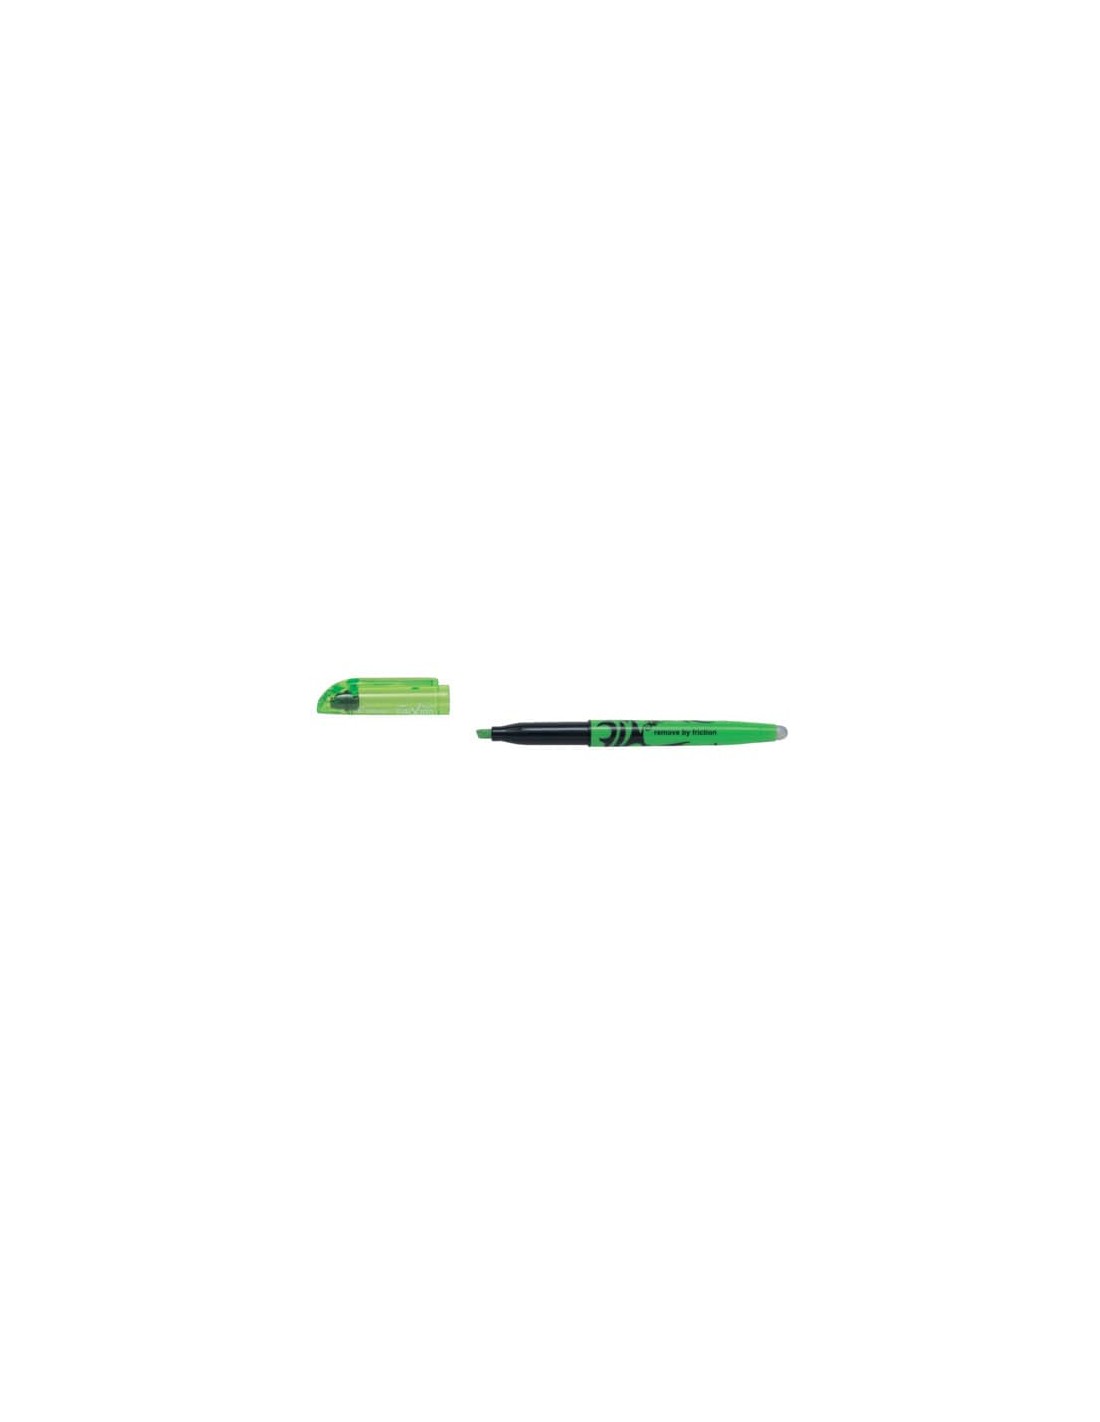 PILOT - 9140 - Evidenziatore a penna cancellabile frixion light - tratto  3,3 mm - verde 00 - Confezione da 12 PZ - 4902505375149